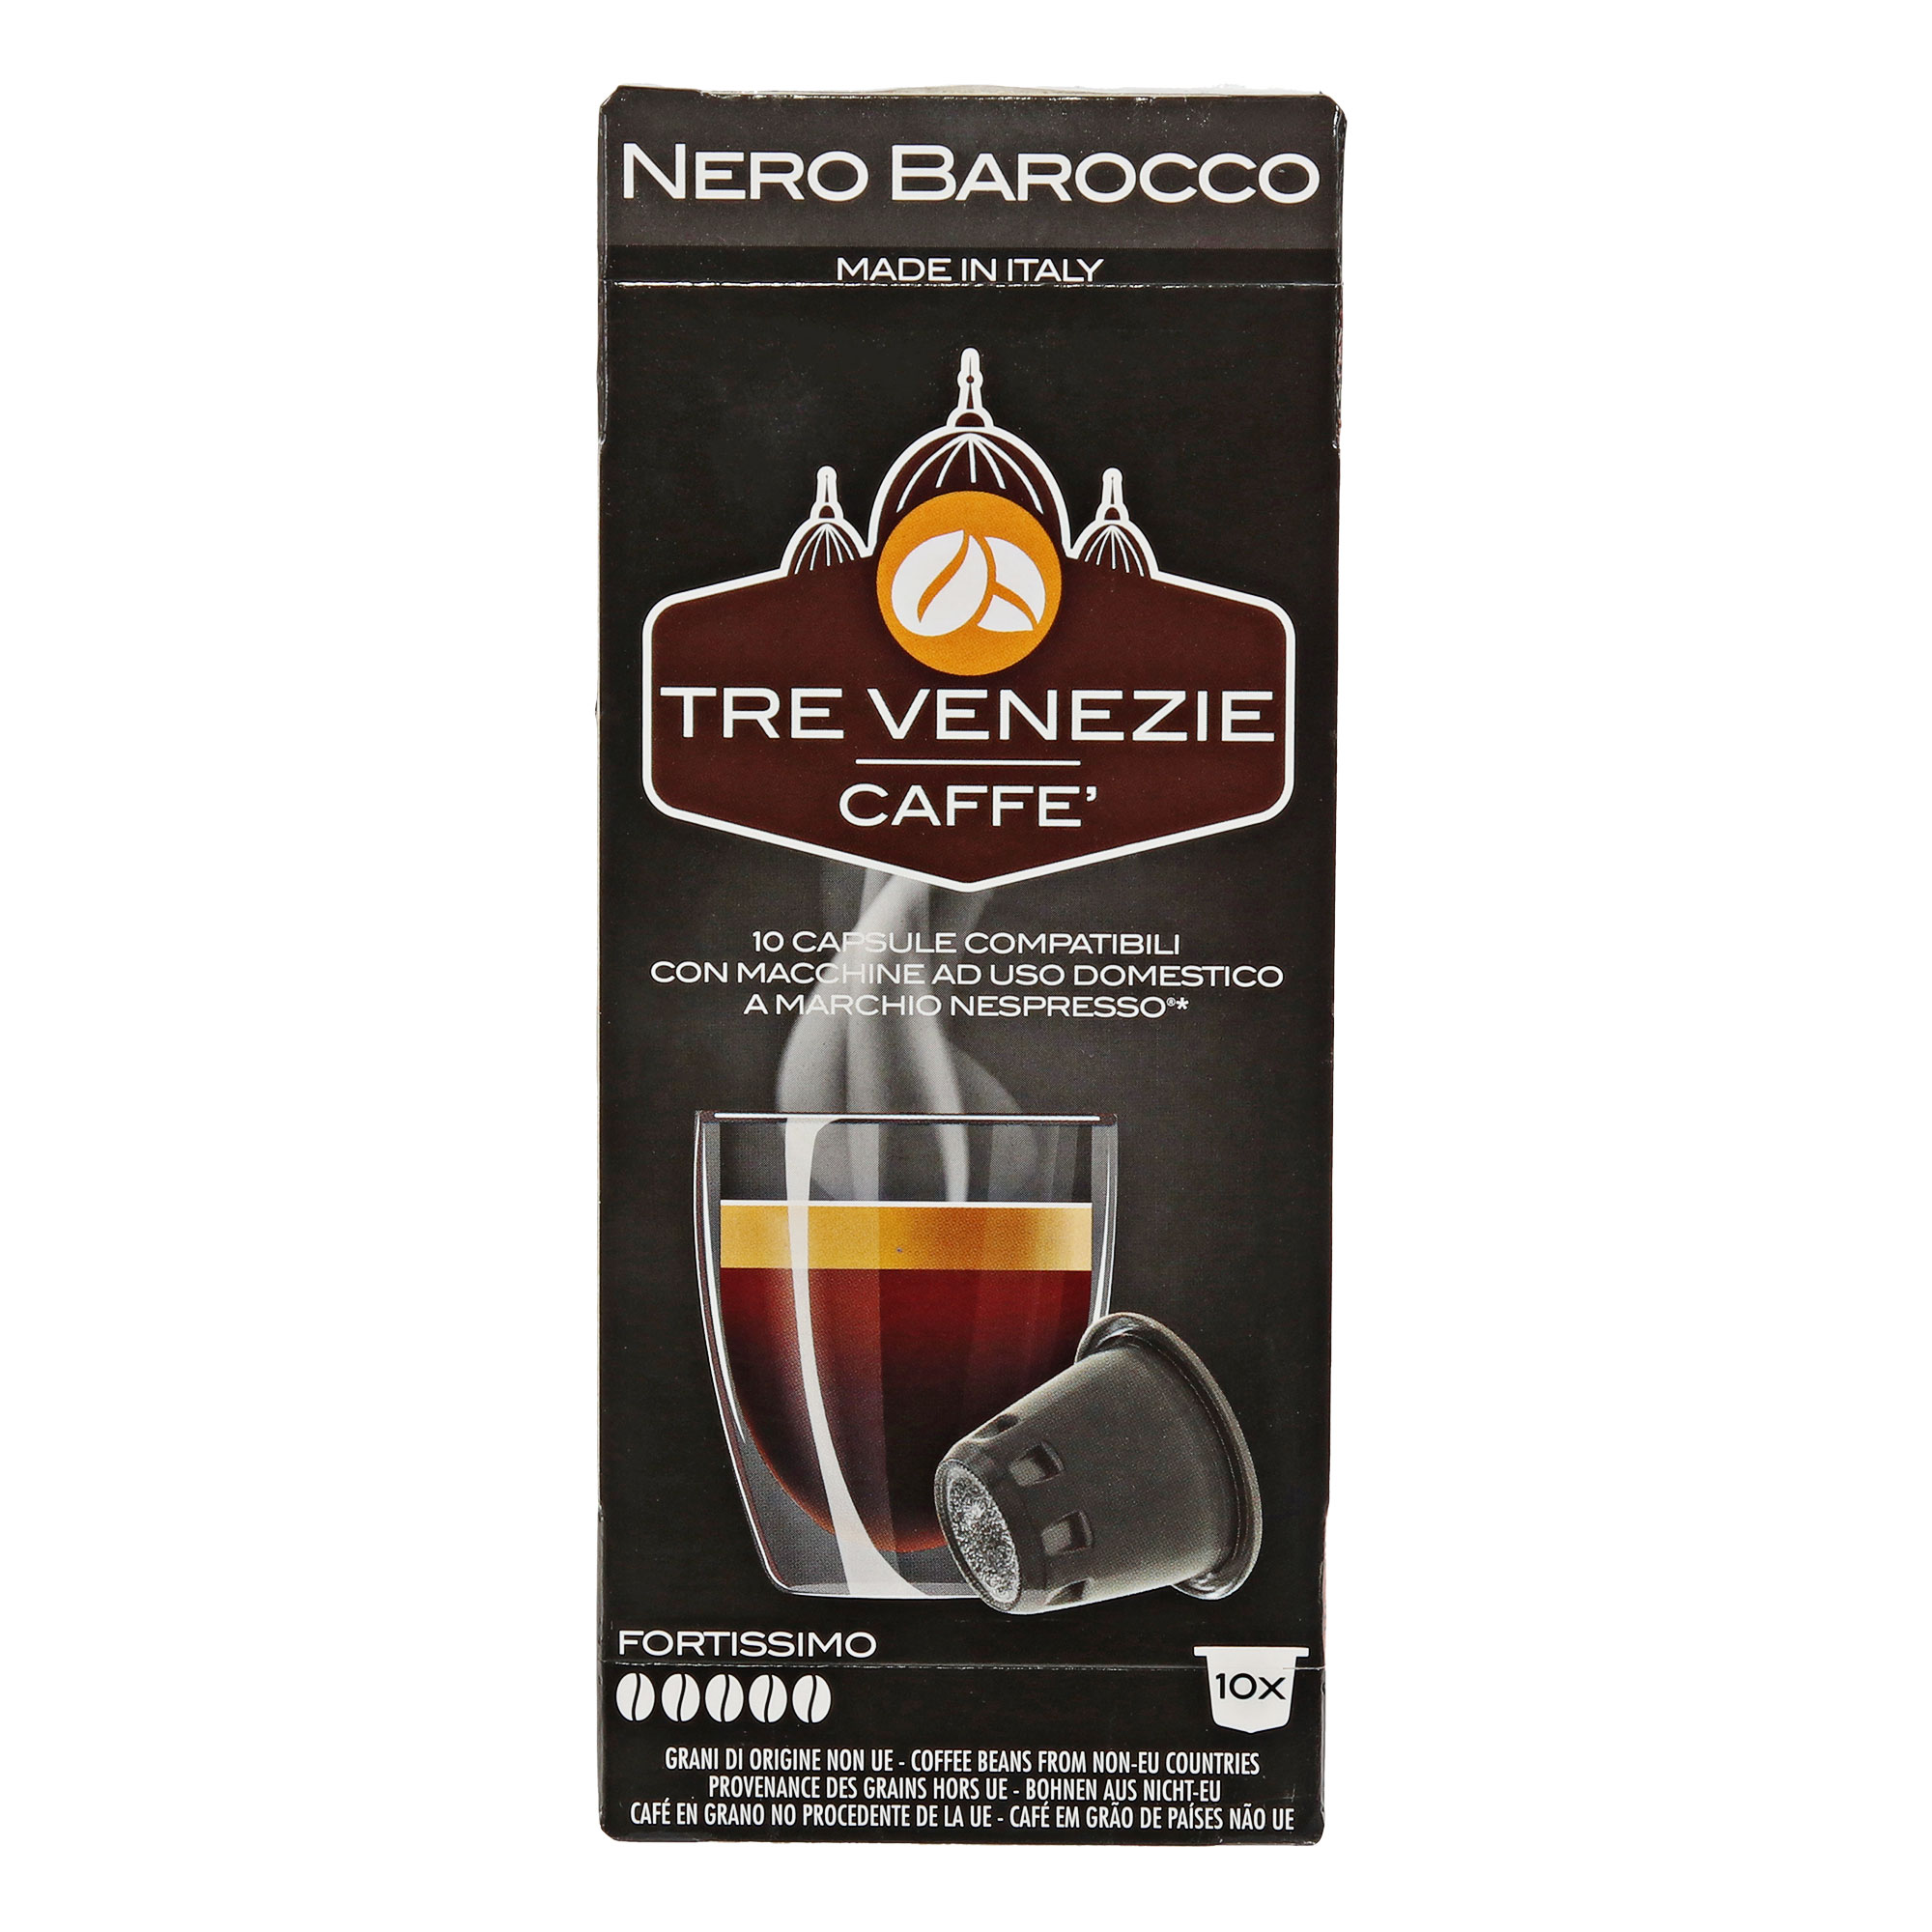 Кофе в капсулах Tre Venezie Caffe Nero Barocco, 10 шт кофе в капсулах caffe vergnano espresso intenso 10 шт х 5 г